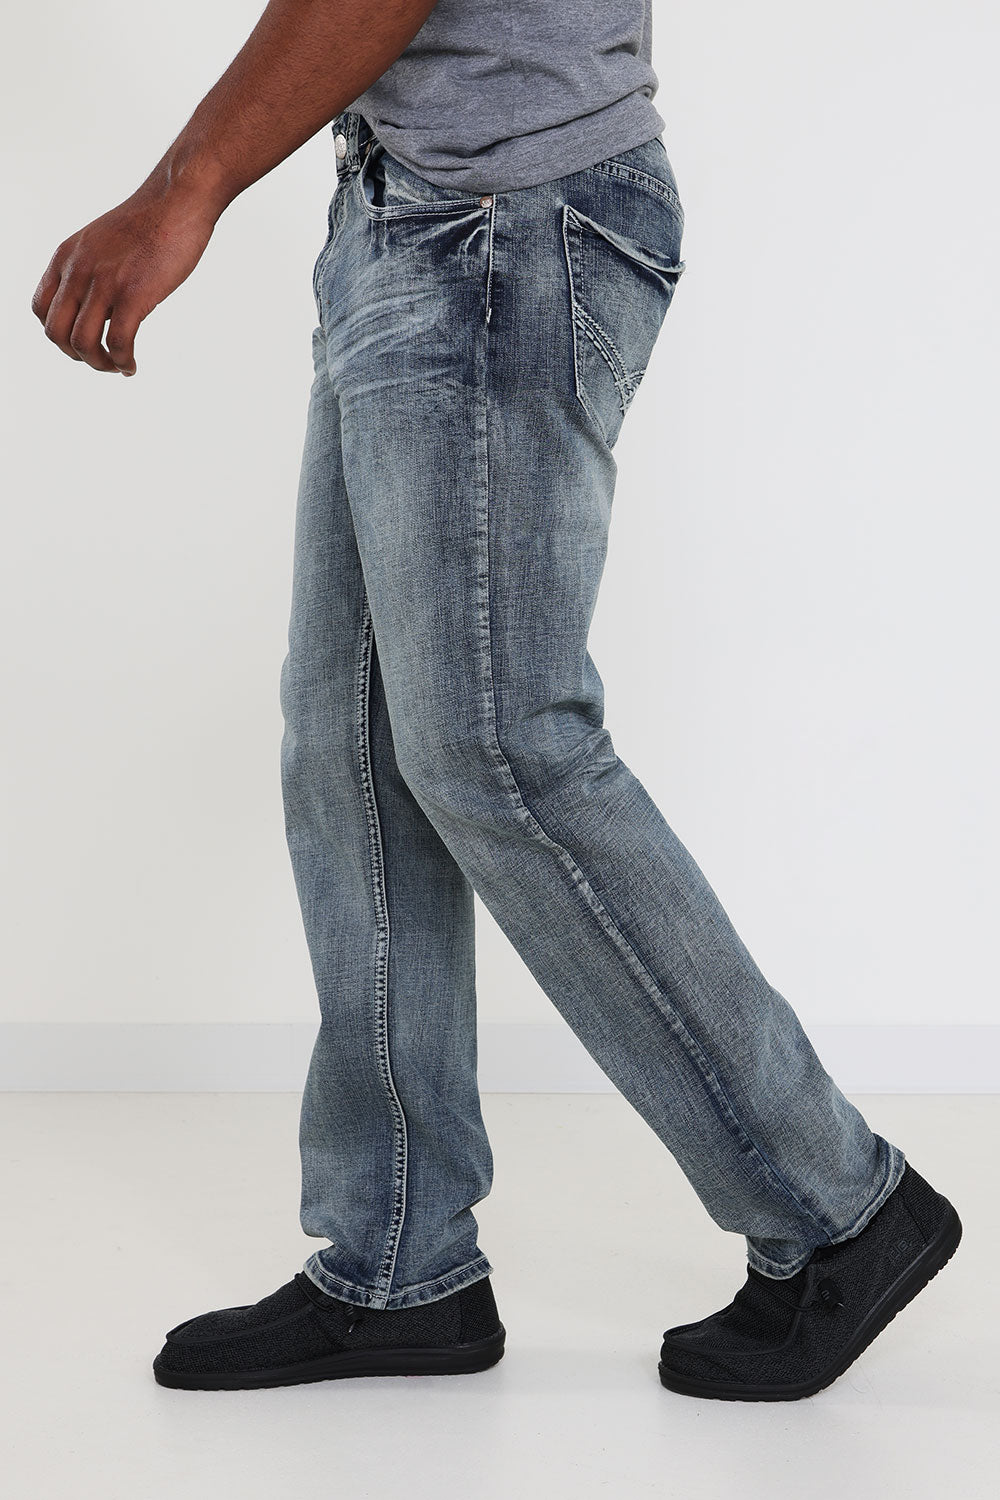 Slim Straight-Leg Jeans for Men